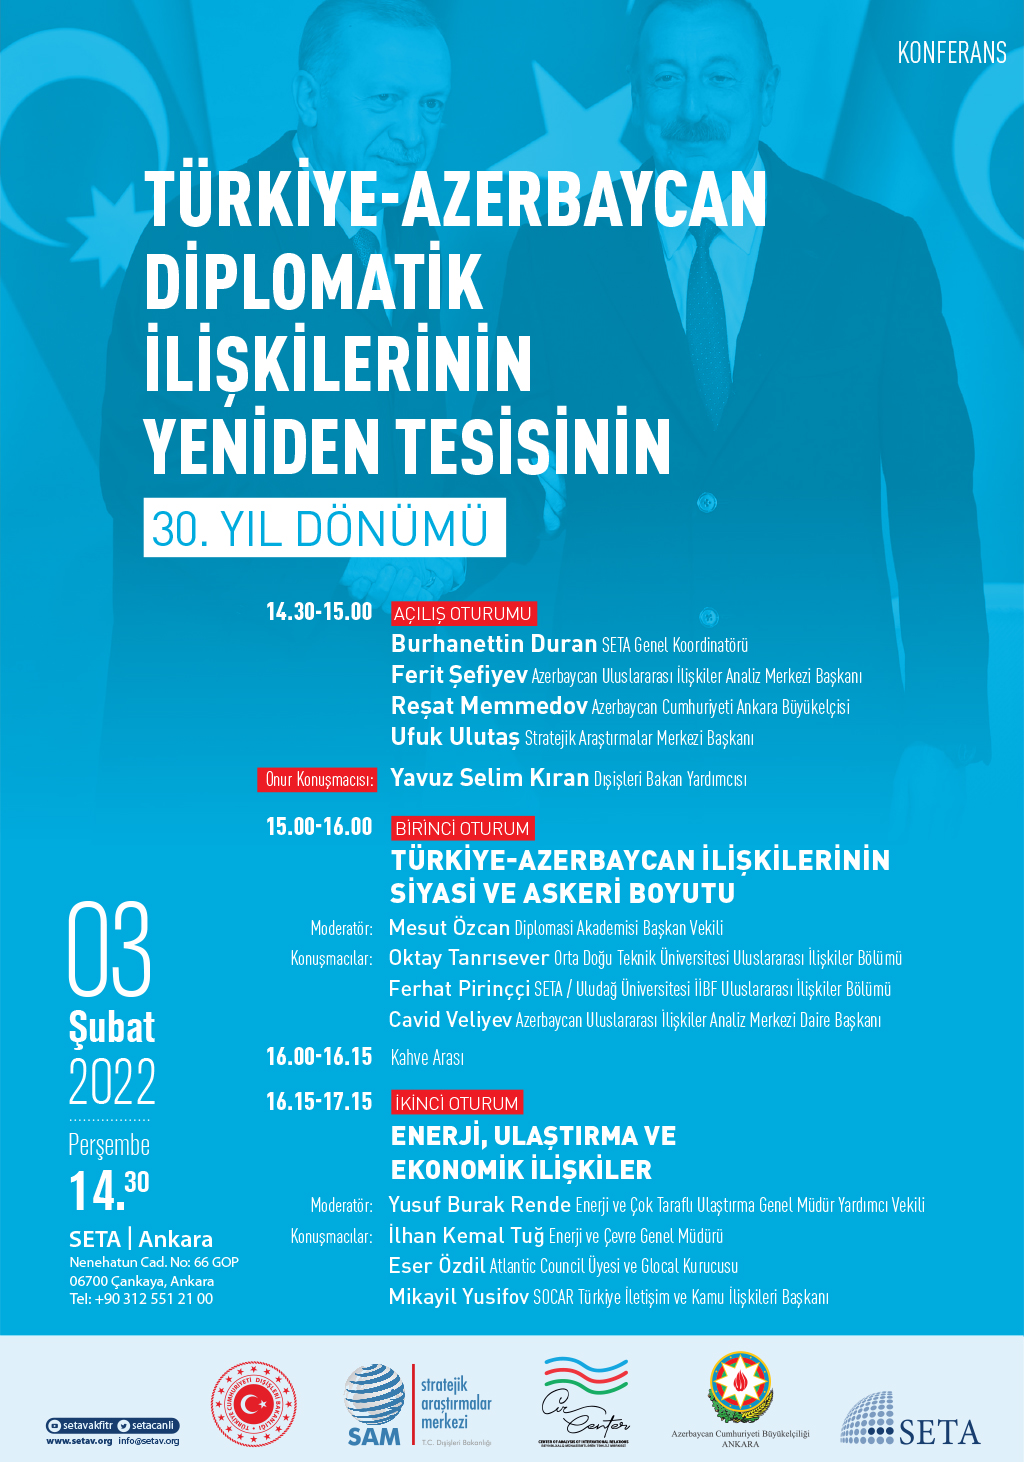 Konferans Türkiye-Azerbaycan Diplomatik İlişkilerinin Yeniden Tesisinin 30 Yıl Dönümü